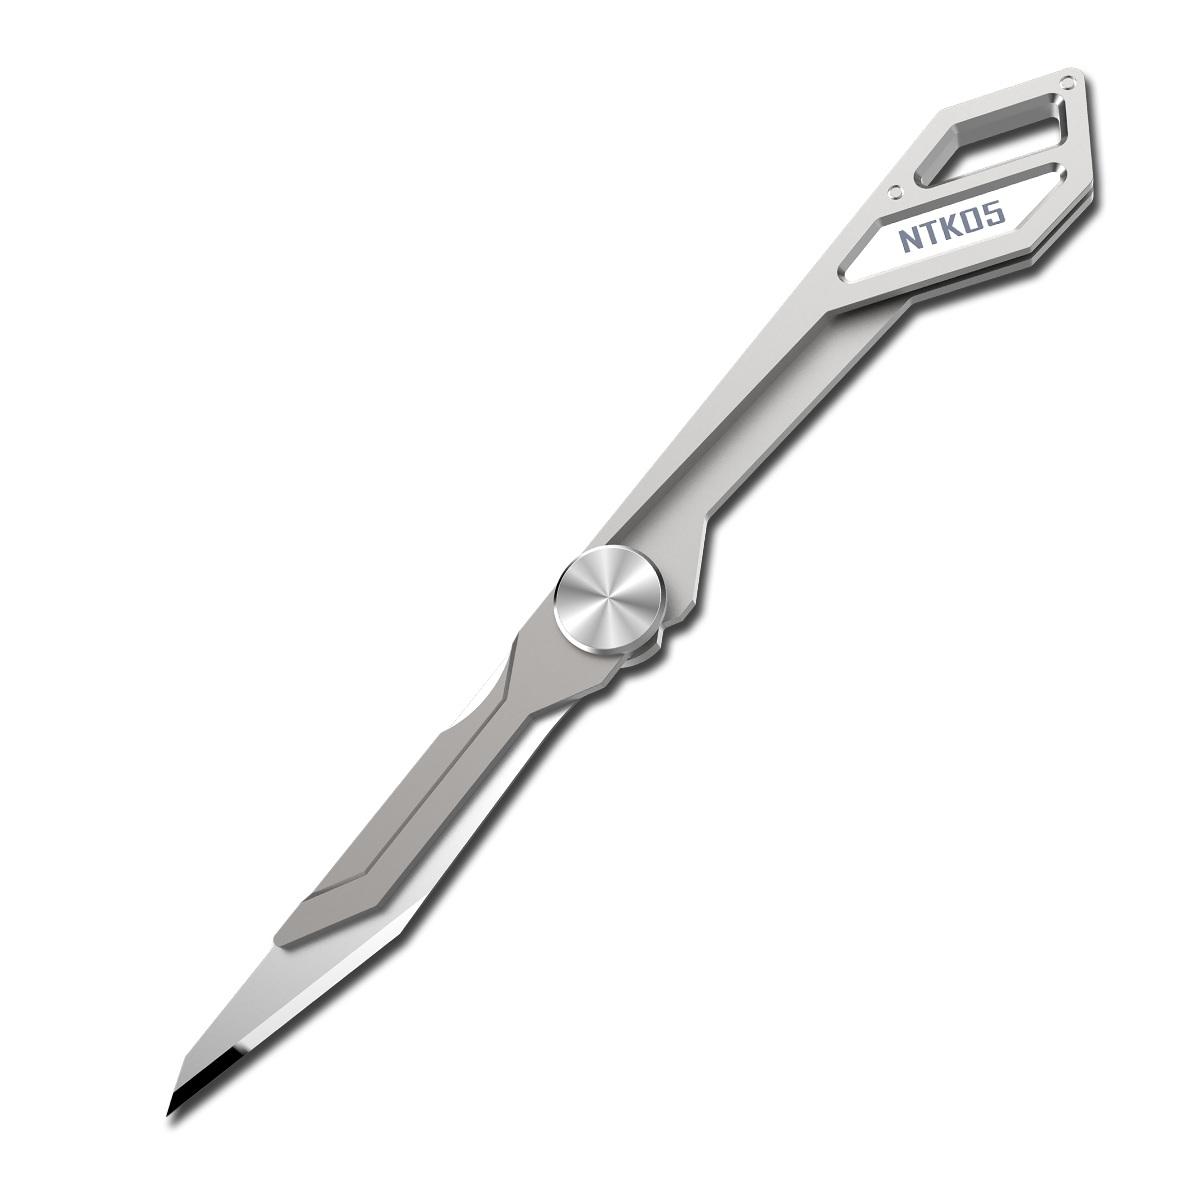 سكين قابلة للطي NITECORE NTKO5 من سبيكة التيتانيوم TC4 فائقة الخفة ، بشفرة قابلة للطي بطول 97 مم ووزن 4.7 جرام ، ومشبك لسلسلة المفاتيح.